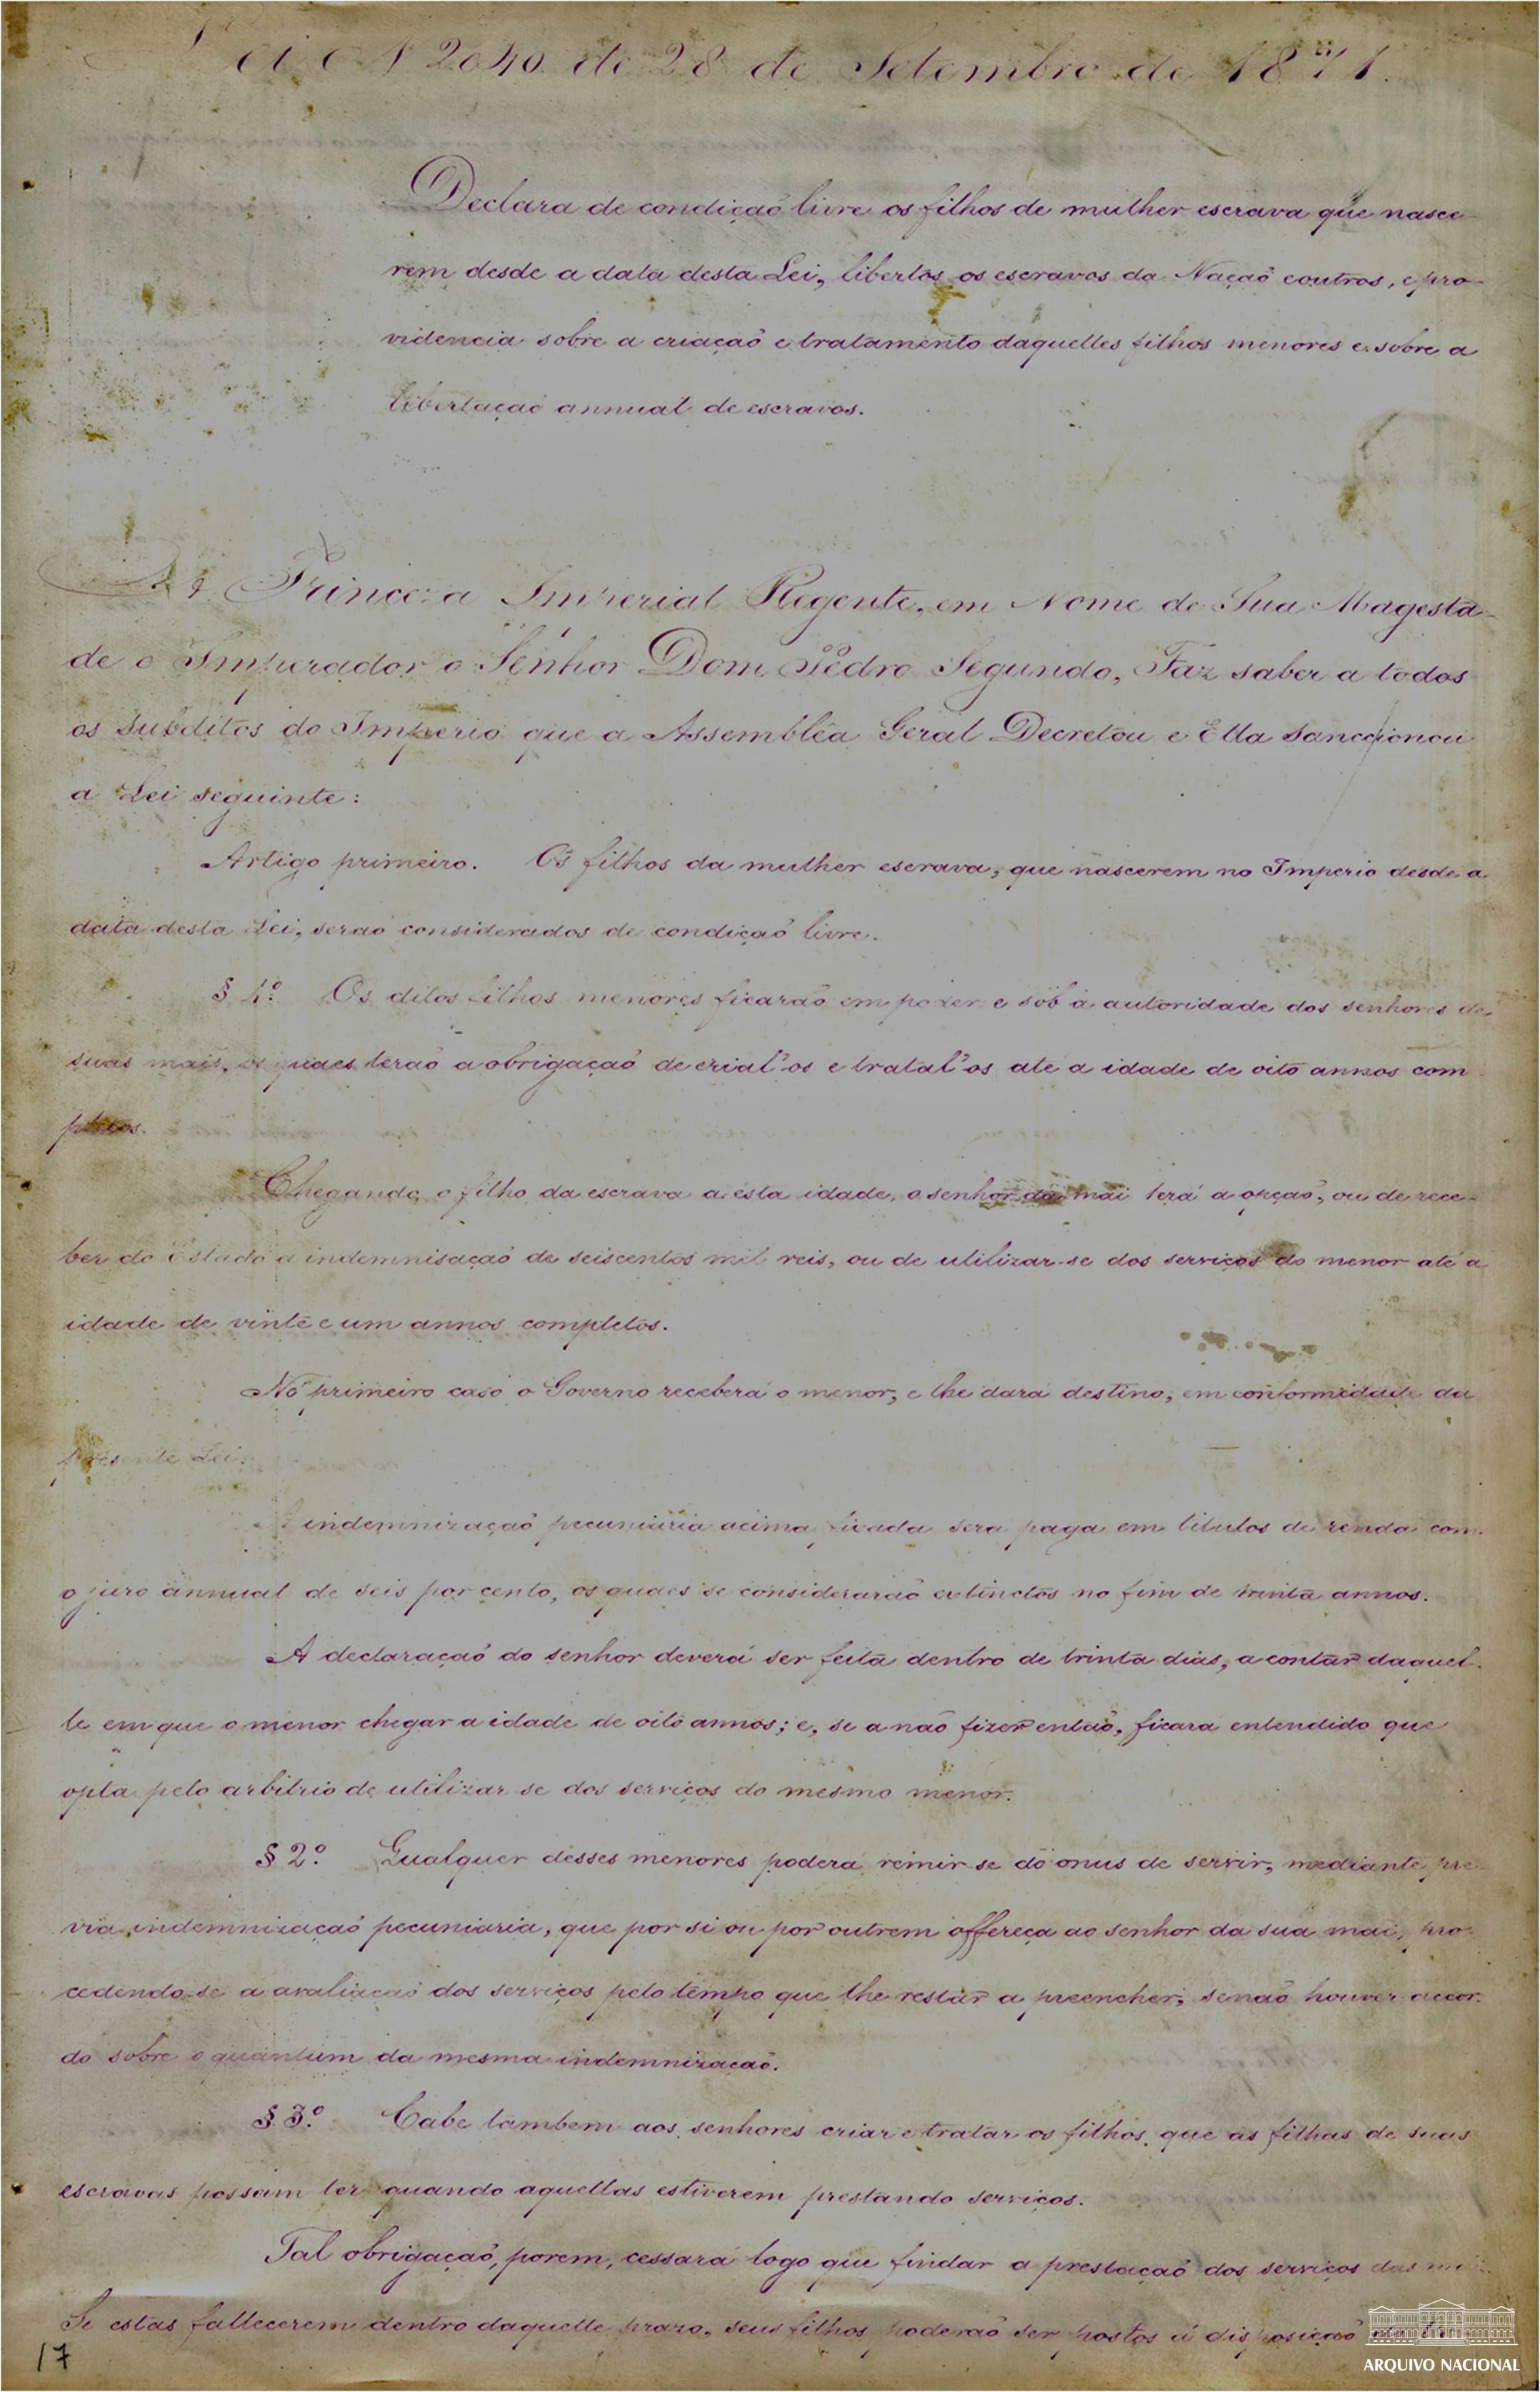 Lei n 2040 de 28 de Setembro de 1871

